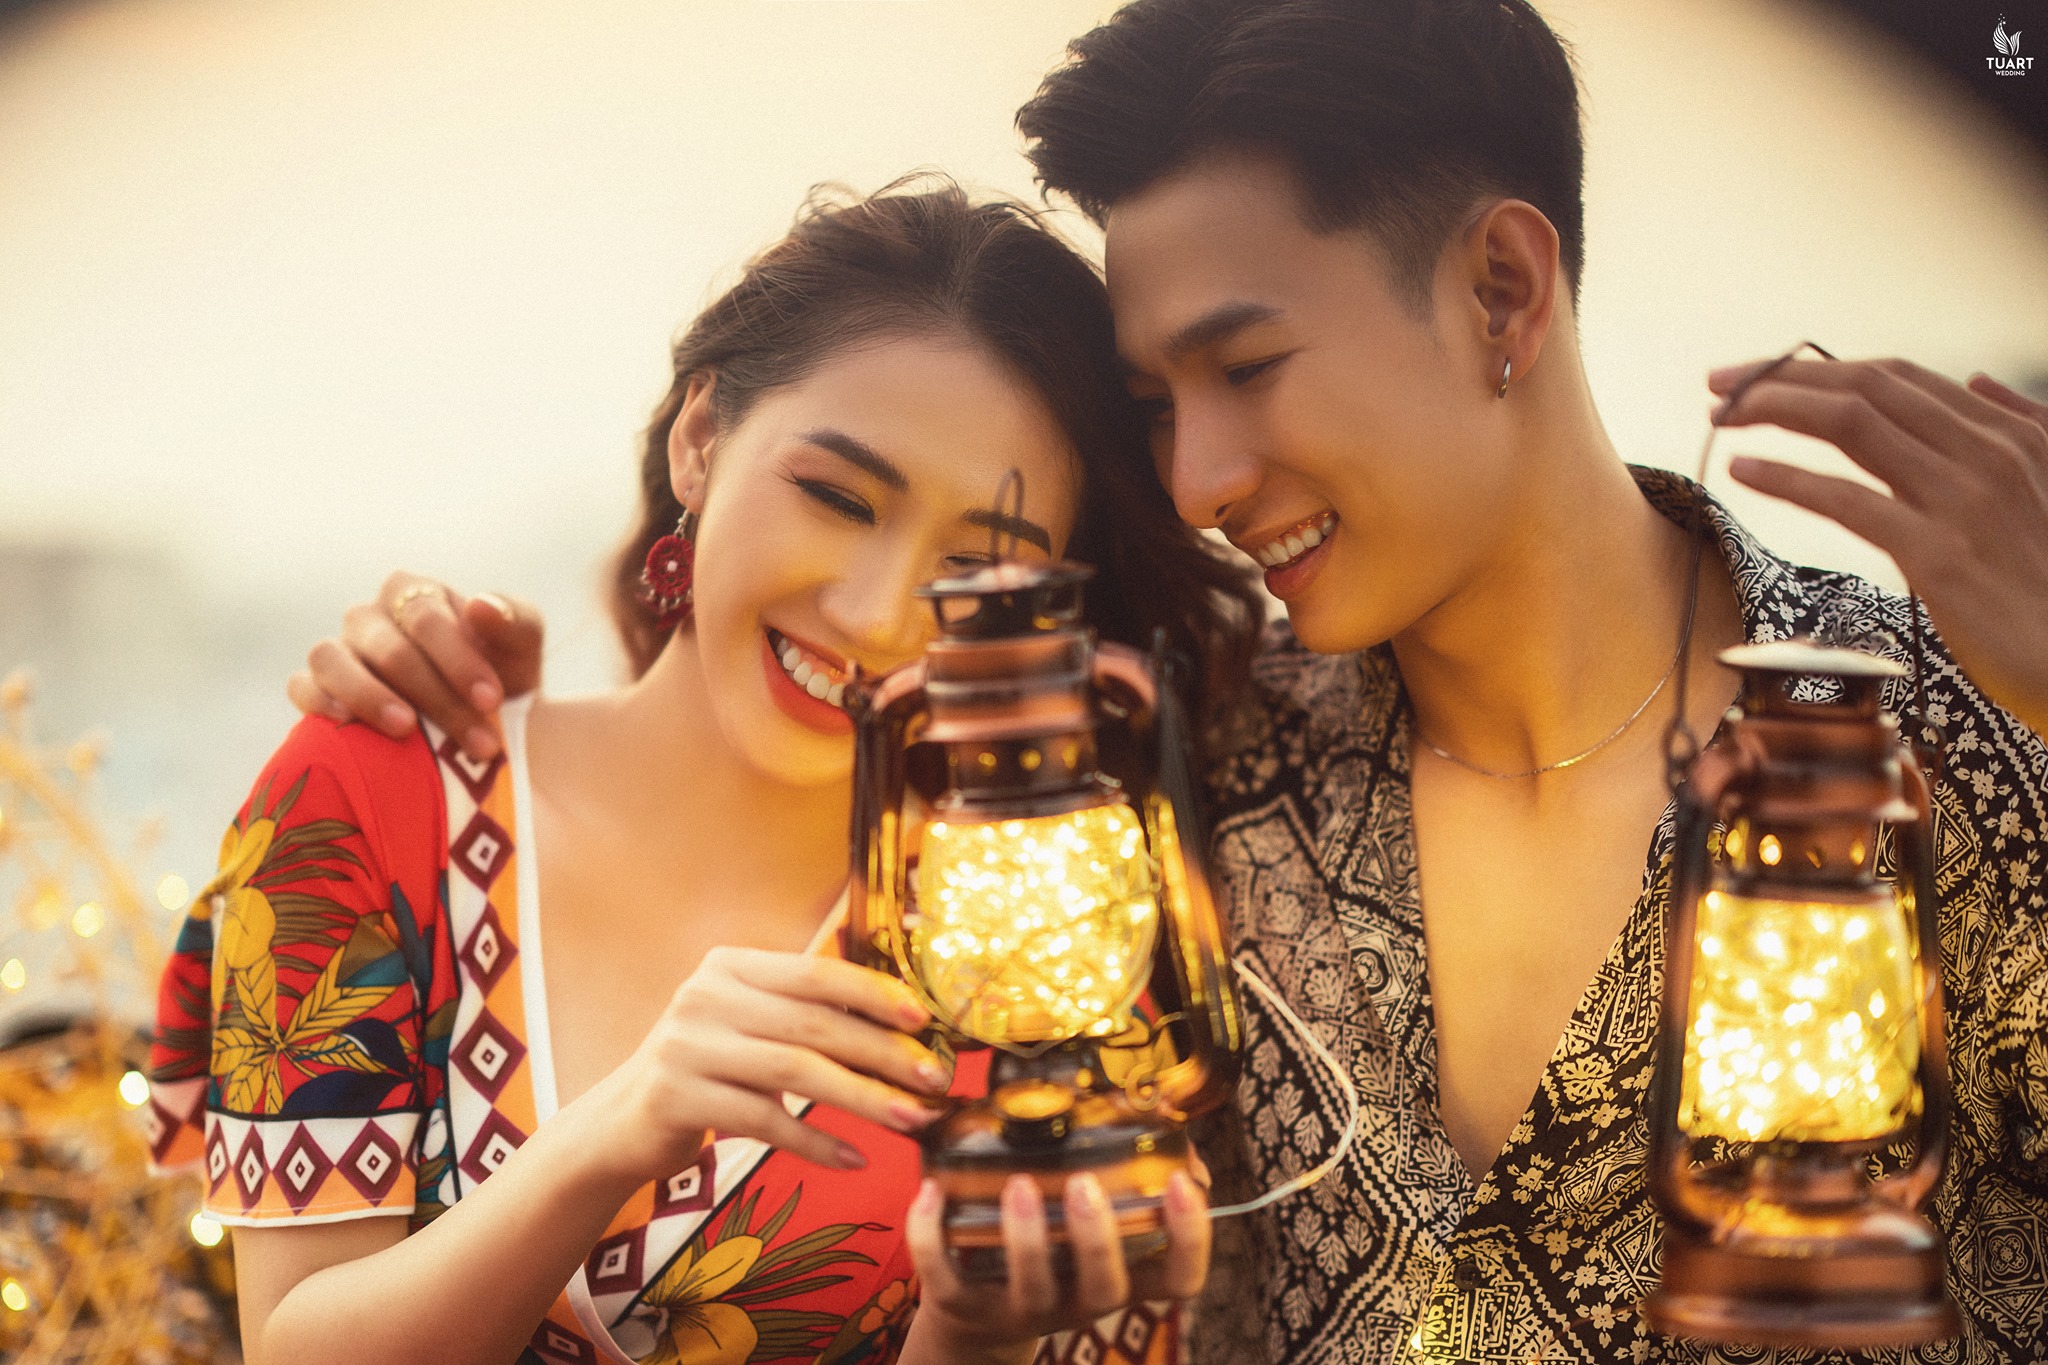 Album ảnh cưới đẹp tại Hồ Chí Minh 